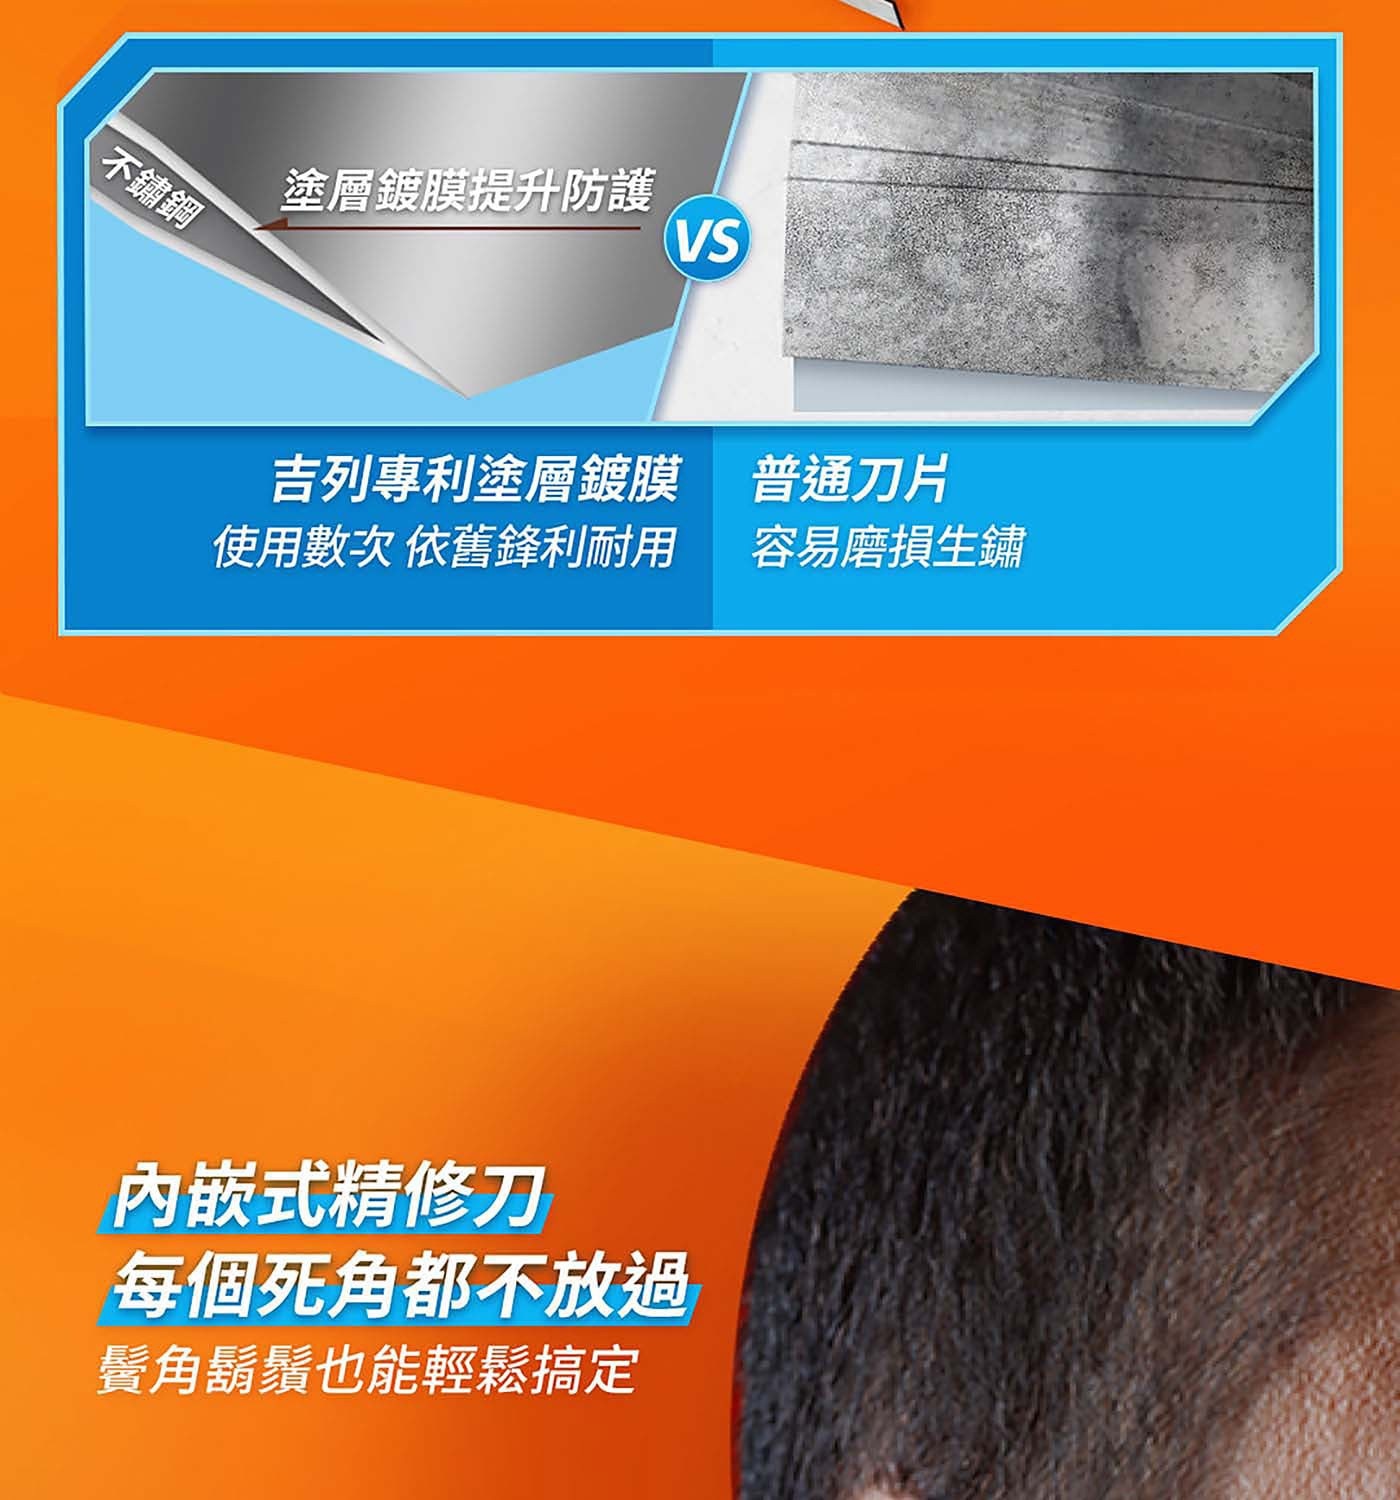 吉列 鋒隱刮鬍刀片 12入專利塗層鍍膜使用數次依舊鋒利耐用內嵌式精修刀每個死角都不放過鬍鬚鬢角也能輕鬆搞定